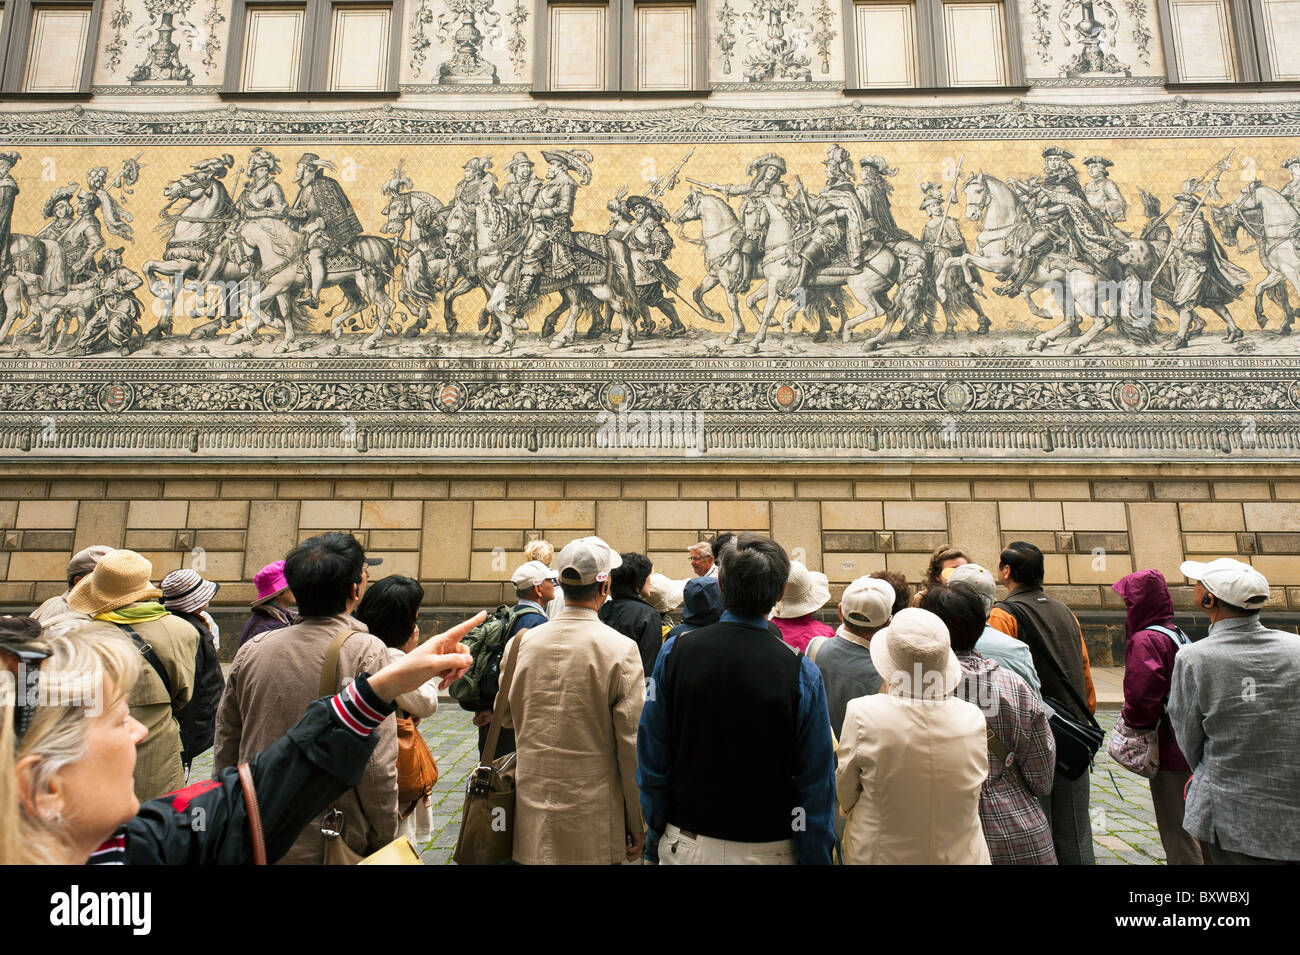 I turisti a guardare Fürstenzug mosaico, il corteo dei duchi, di porcellana di Meissen piastrelle a mosaico, Dresda, Sassonia, Germania, Europa Foto Stock